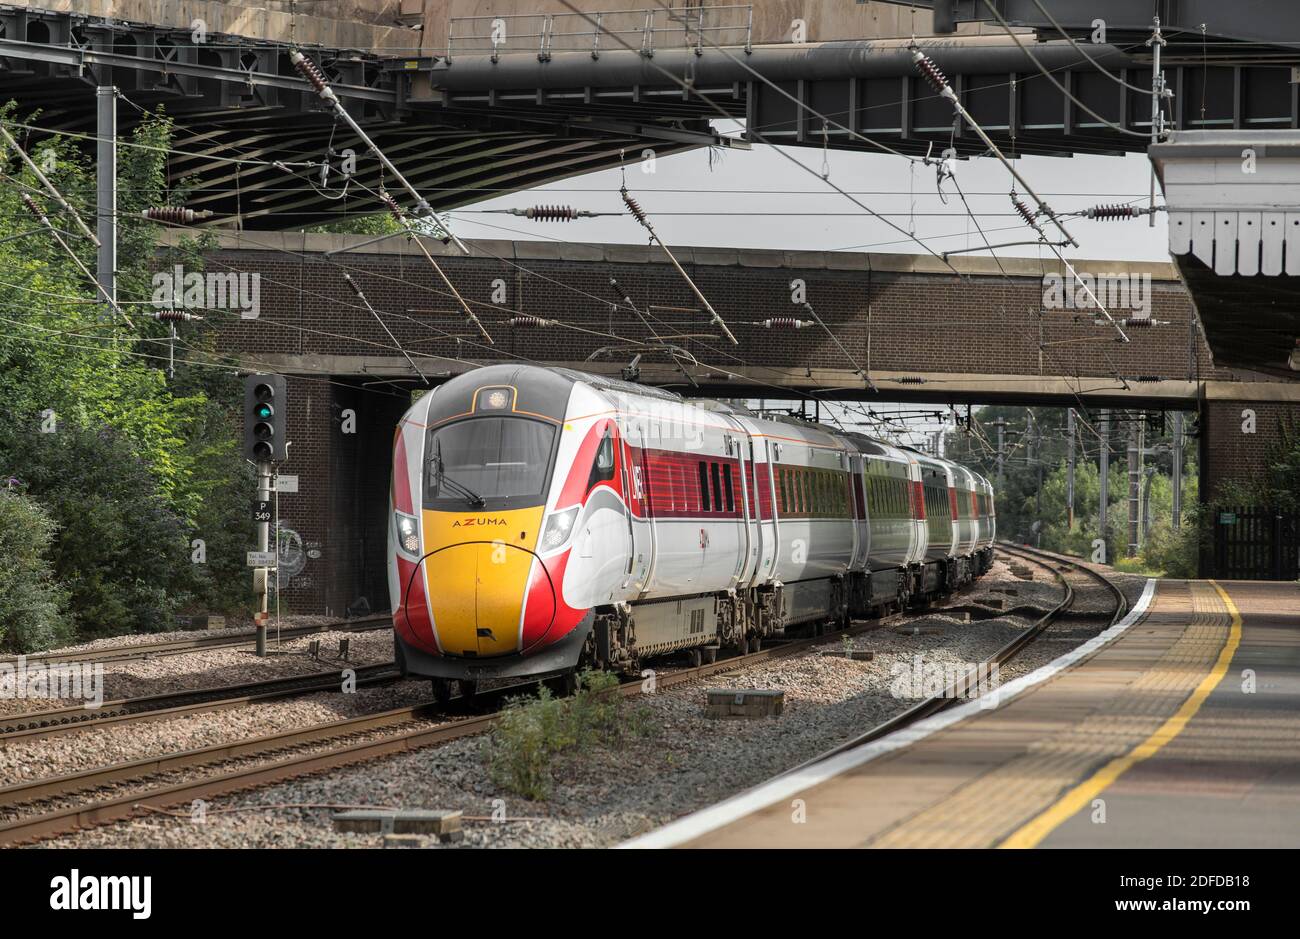 Le train à grande vitesse Azuma à LNER très rapide à travers une gare au Royaume-Uni. Banque D'Images